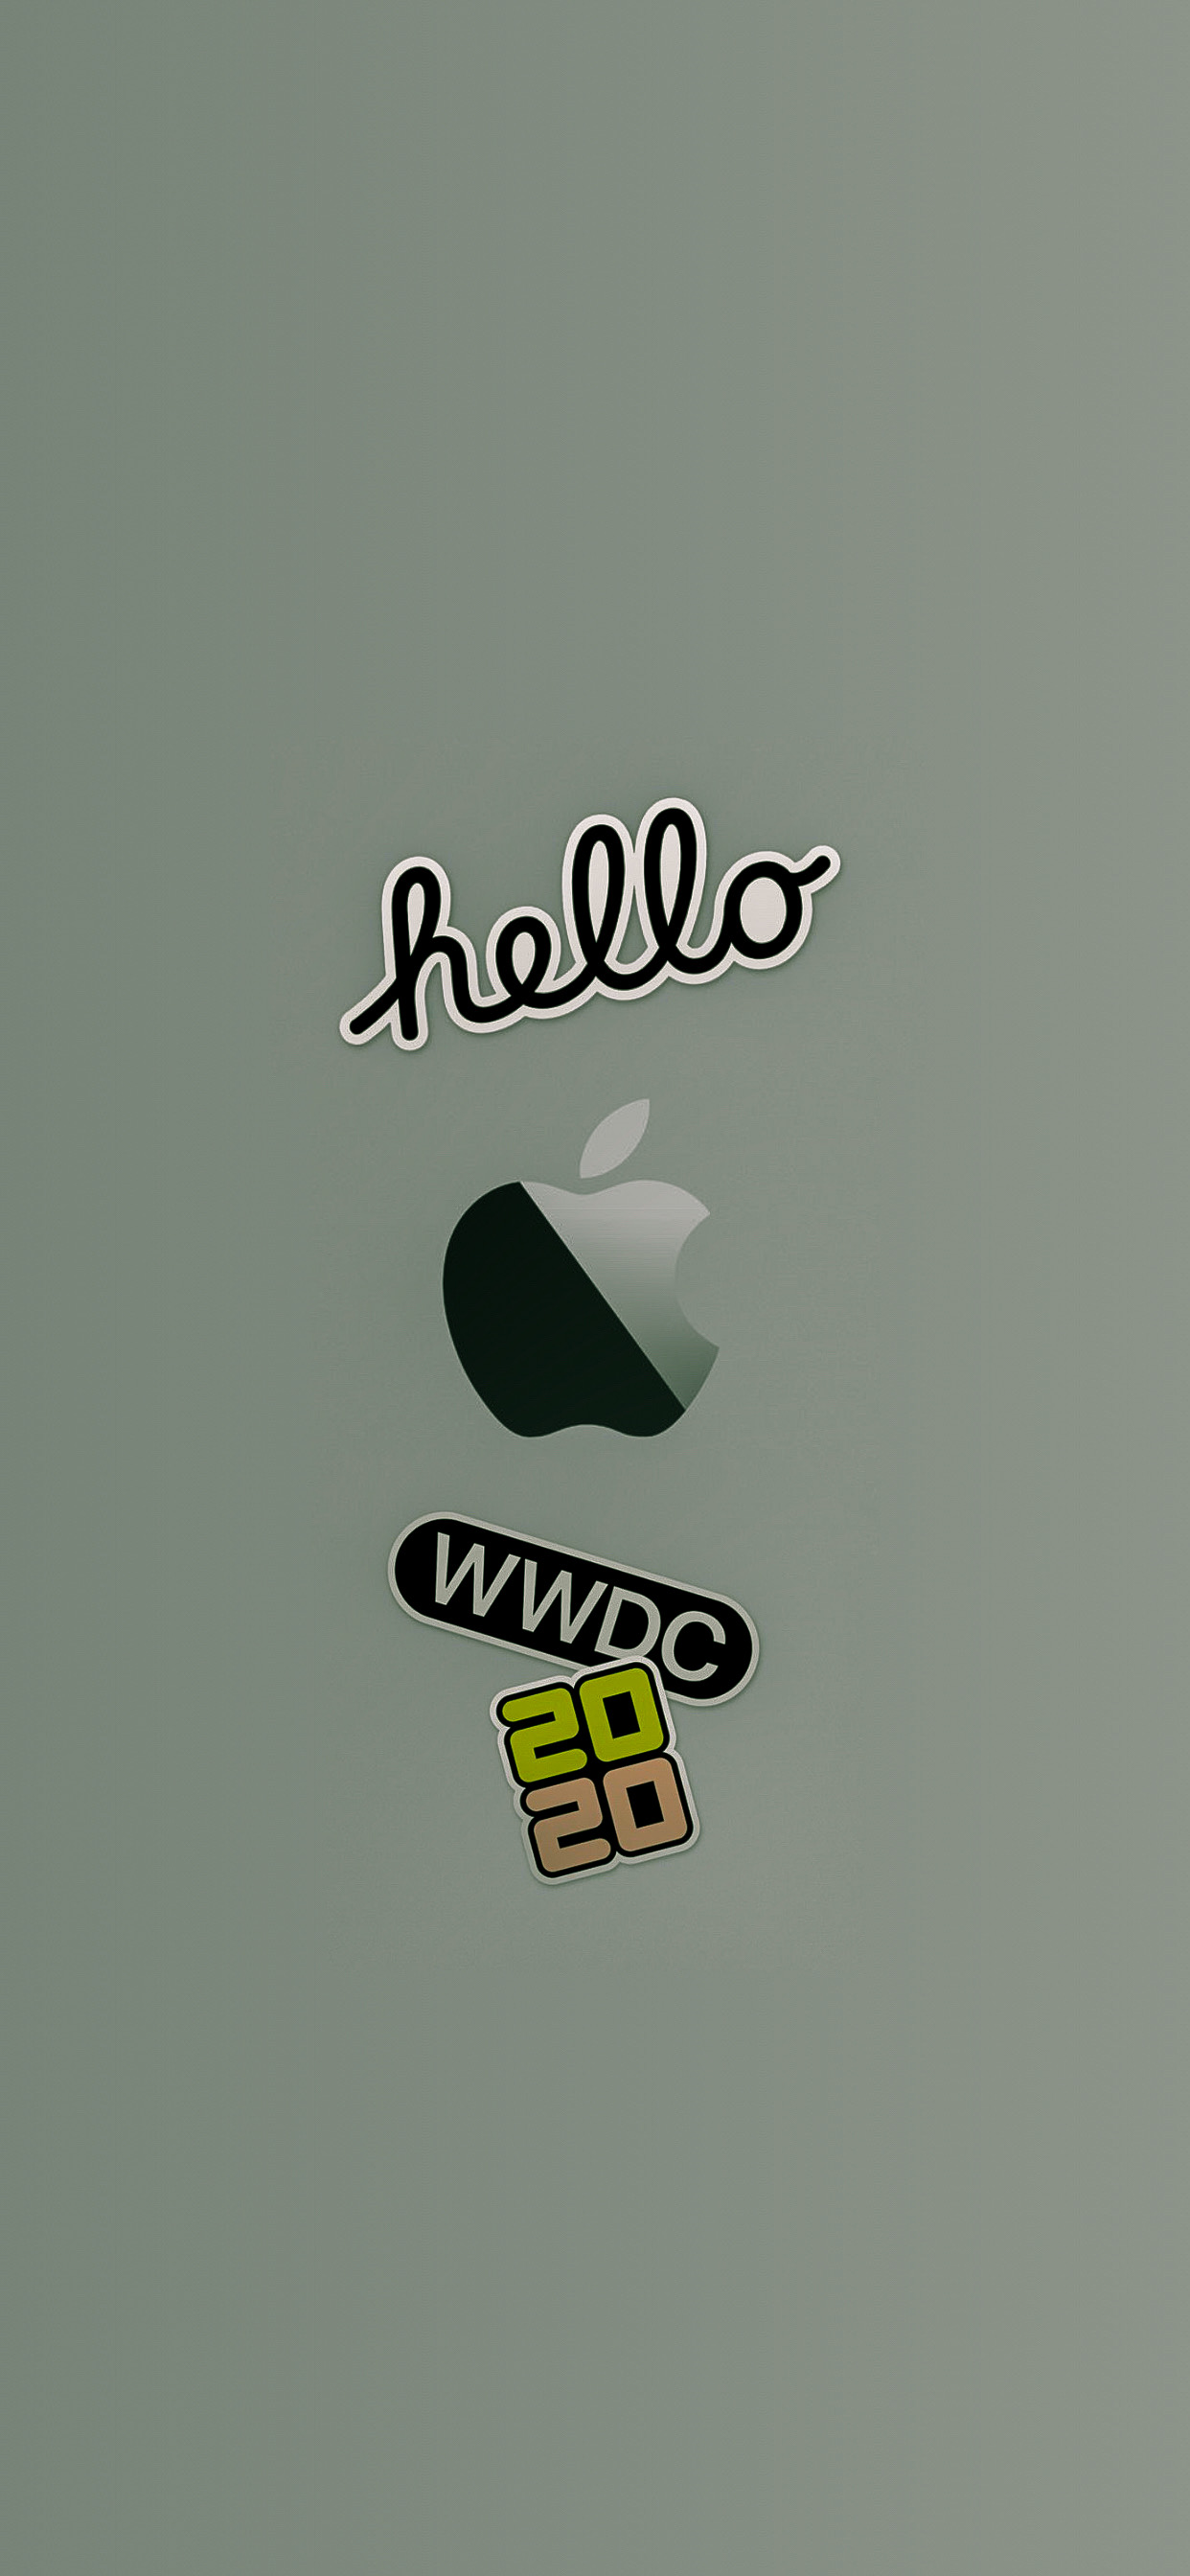 Hình nền WWDC 2020 cho iPhone: Bạn là người yêu công nghệ và đang mong chờ sự kiện WWDC 2020 mới nhất của Apple? Hãy trang trí cho chiếc iPhone của bạn với những hình nền đặc biệt kỷ niệm sự kiện WWDC 2020 này! Với những hình nền WWDC 2020 cho iPhone của chúng tôi, bạn sẽ được chiêm ngưỡng những hình ảnh thiết kế đẹp mắt và tương thích hoàn hảo với chiếc iPhone của bạn. Đừng bỏ qua cơ hội này, hãy trải nghiệm ngay thôi!